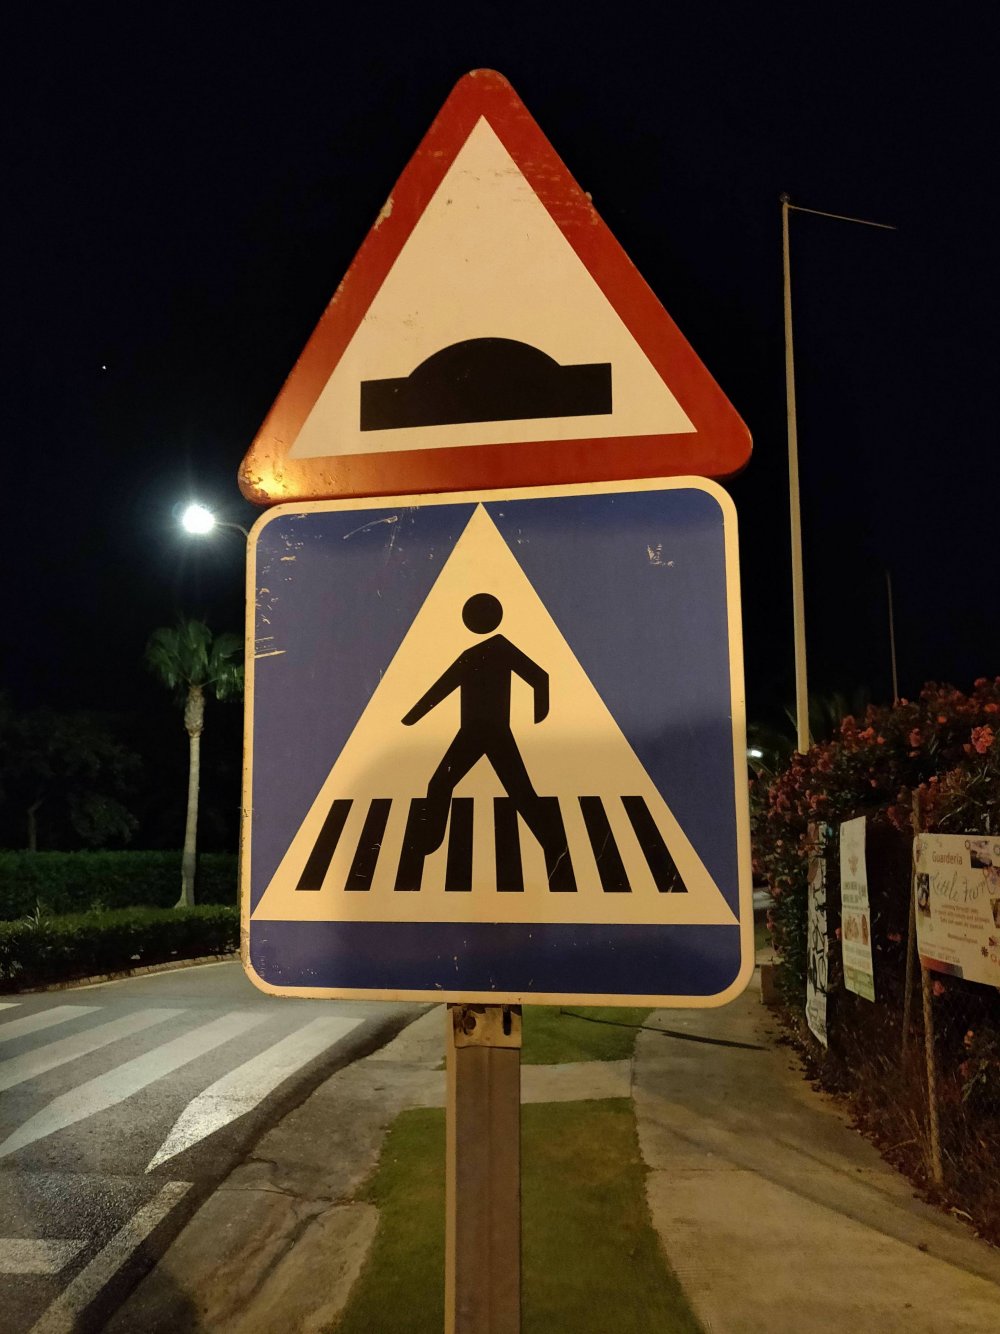 Прикольные дорожные знаки